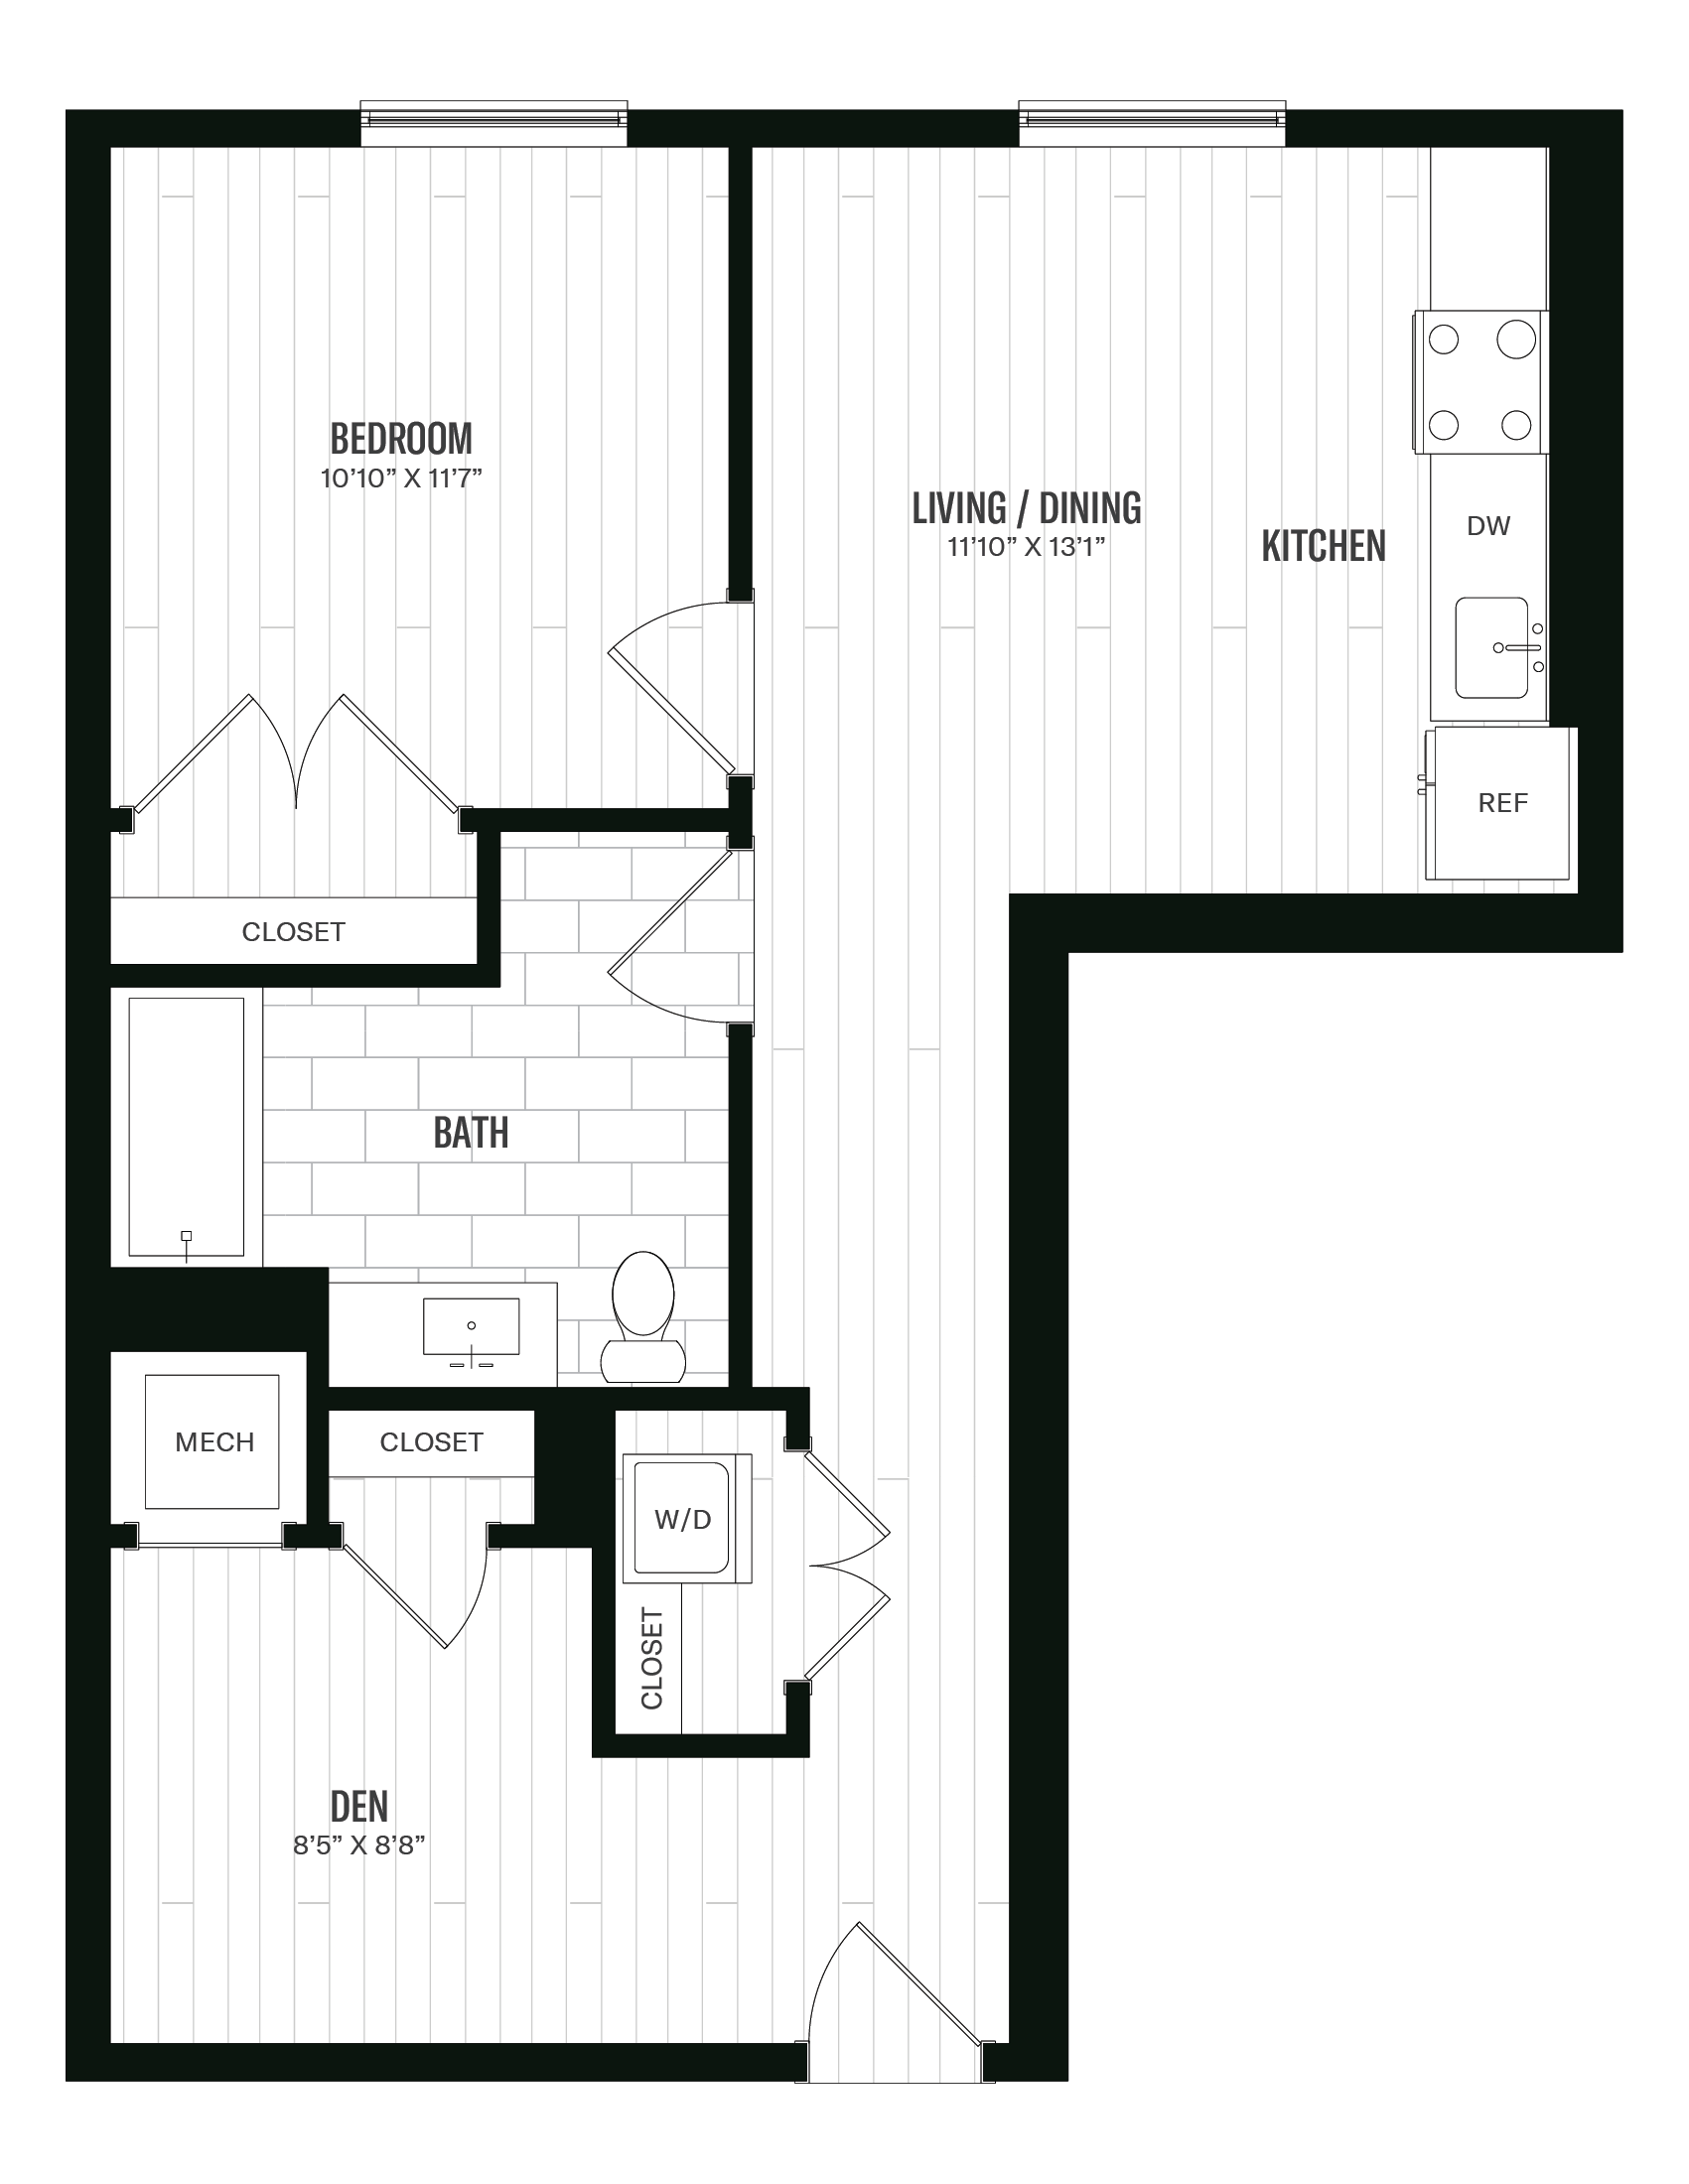 Floorplan image of unit 364